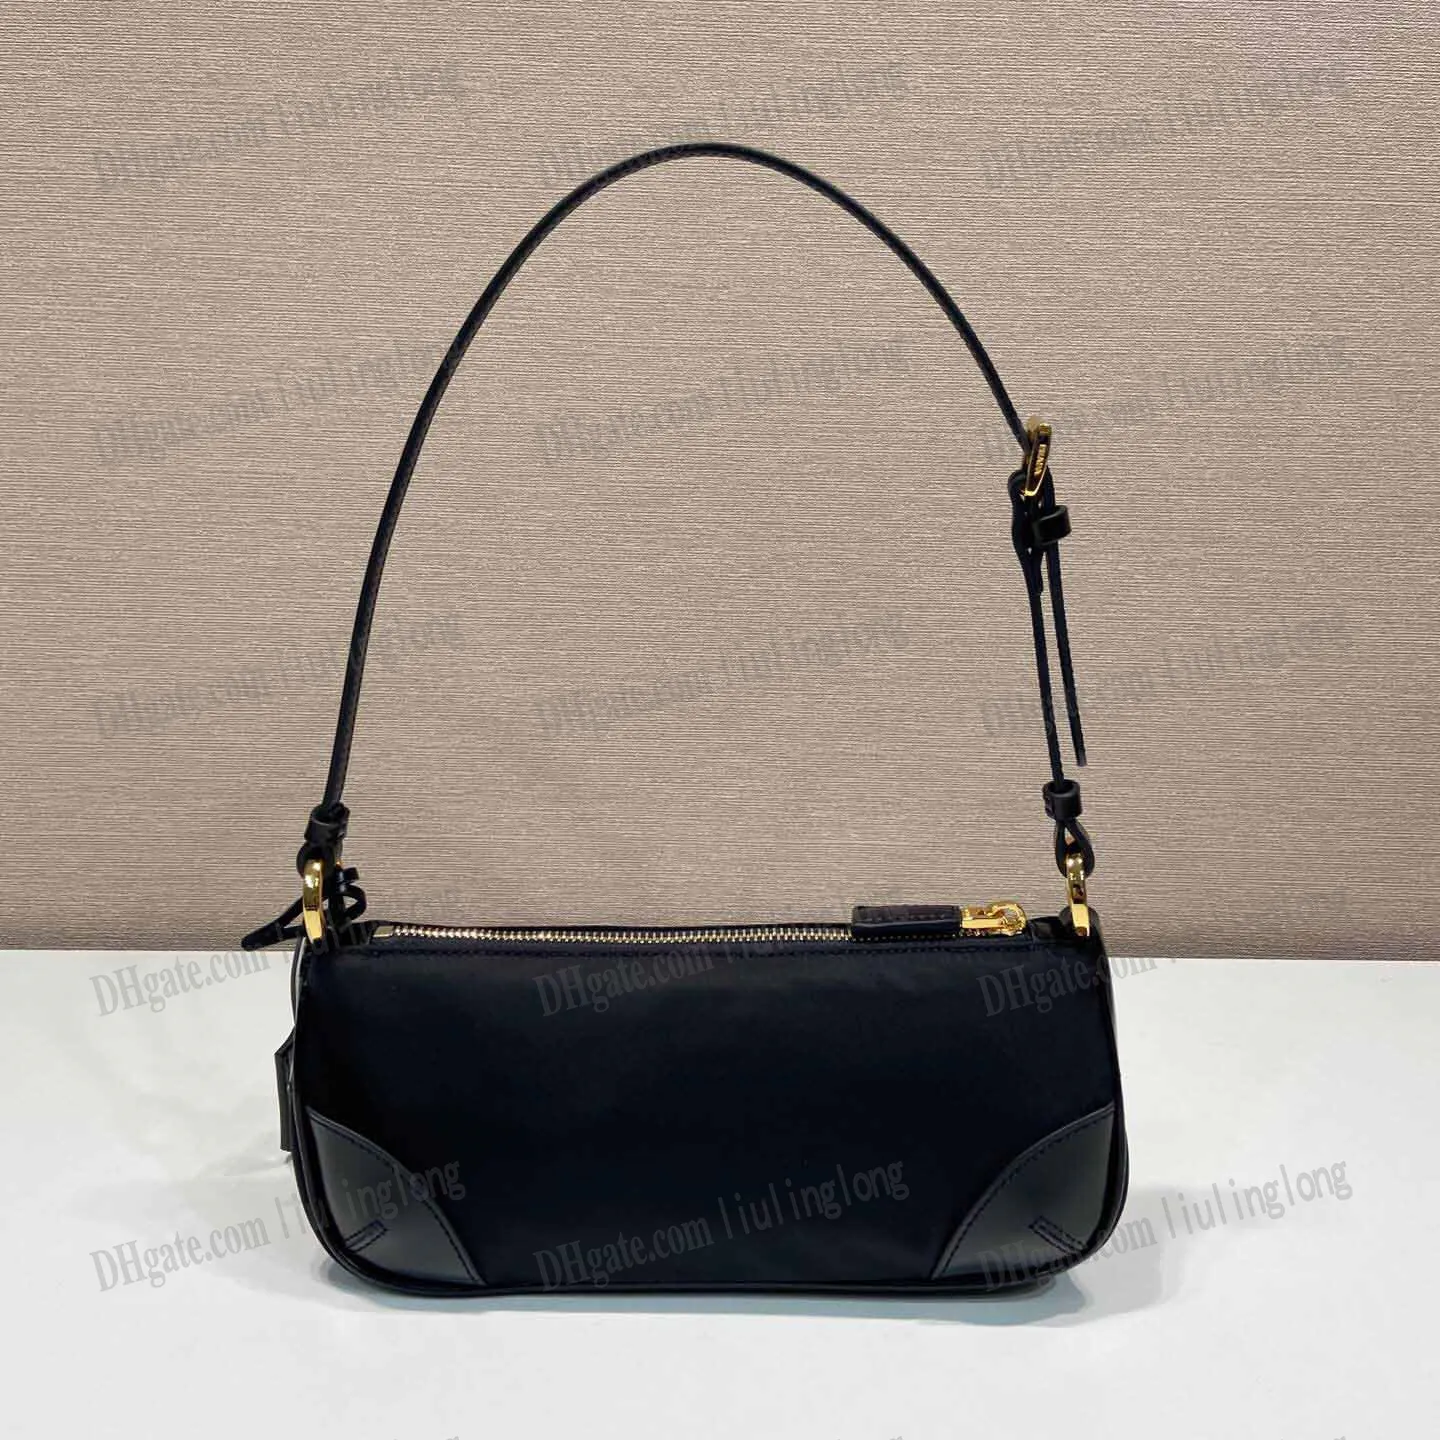 Nylon reedition 2002 Re-dalon i szczotkowane skórzane luksusowe torby designerskie torby na ramię kobiety Czarna torba do torebki torebki hobo torebki lady torebki